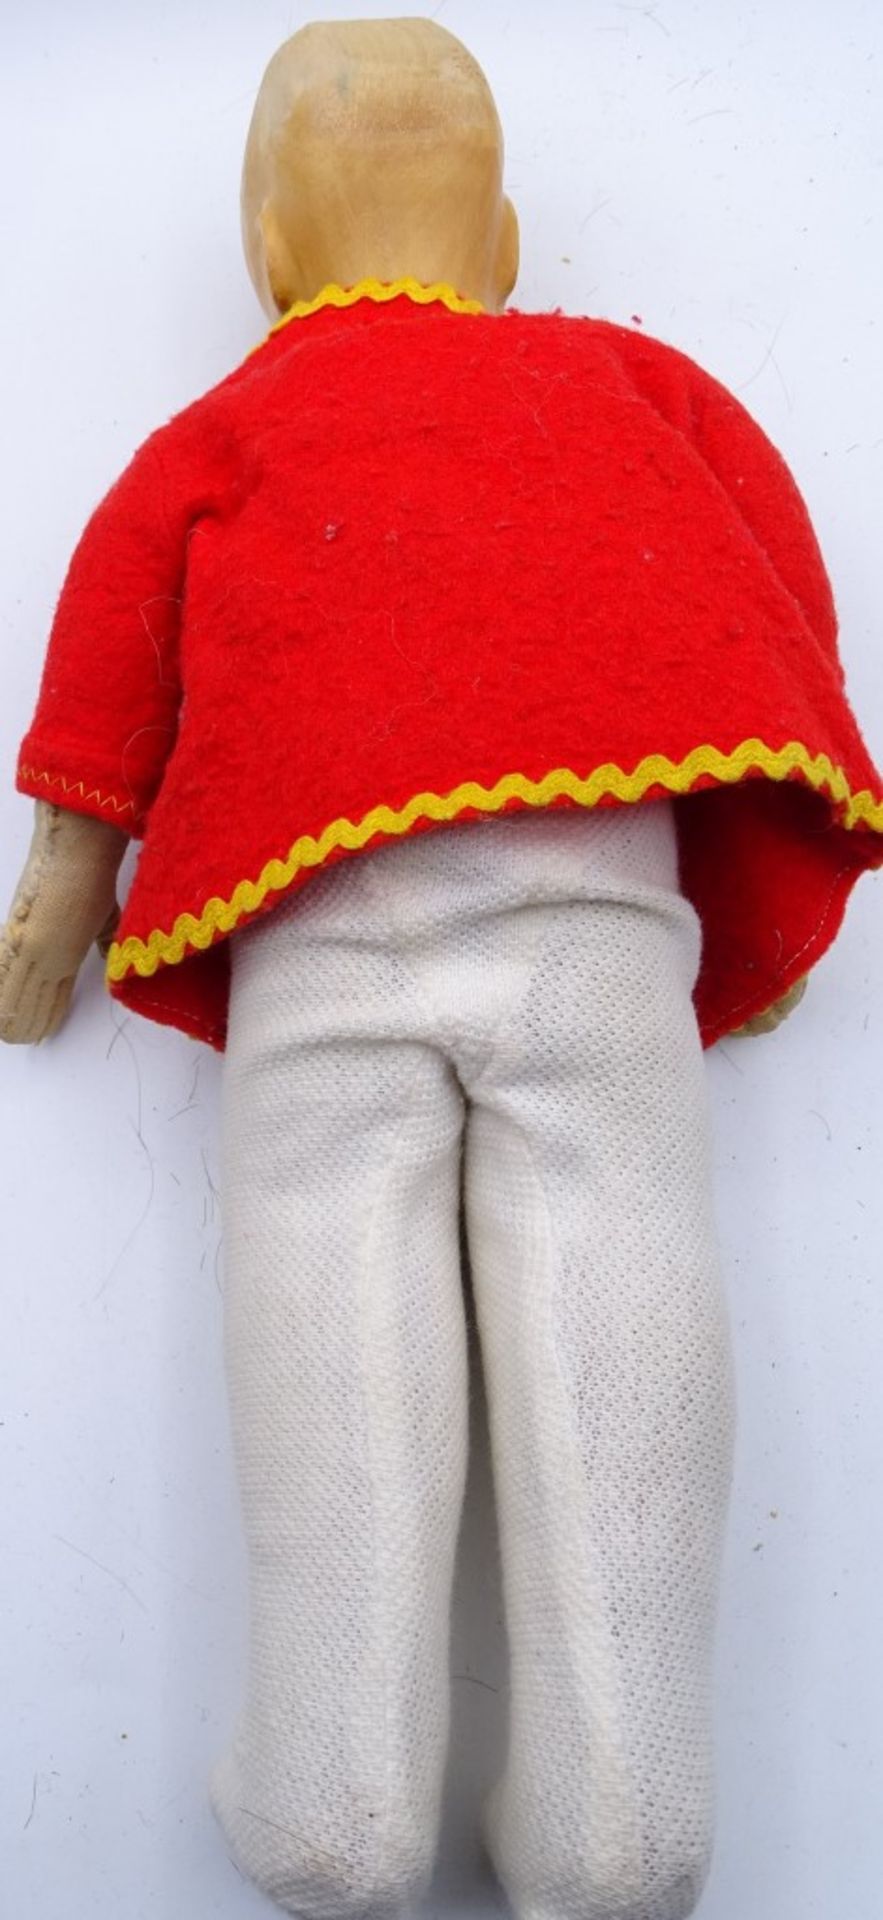 Puppe mit Holzkopf und festem Stoffbalg wie bei K.Kruse Puppen ca. 30 cm - Bild 3 aus 3